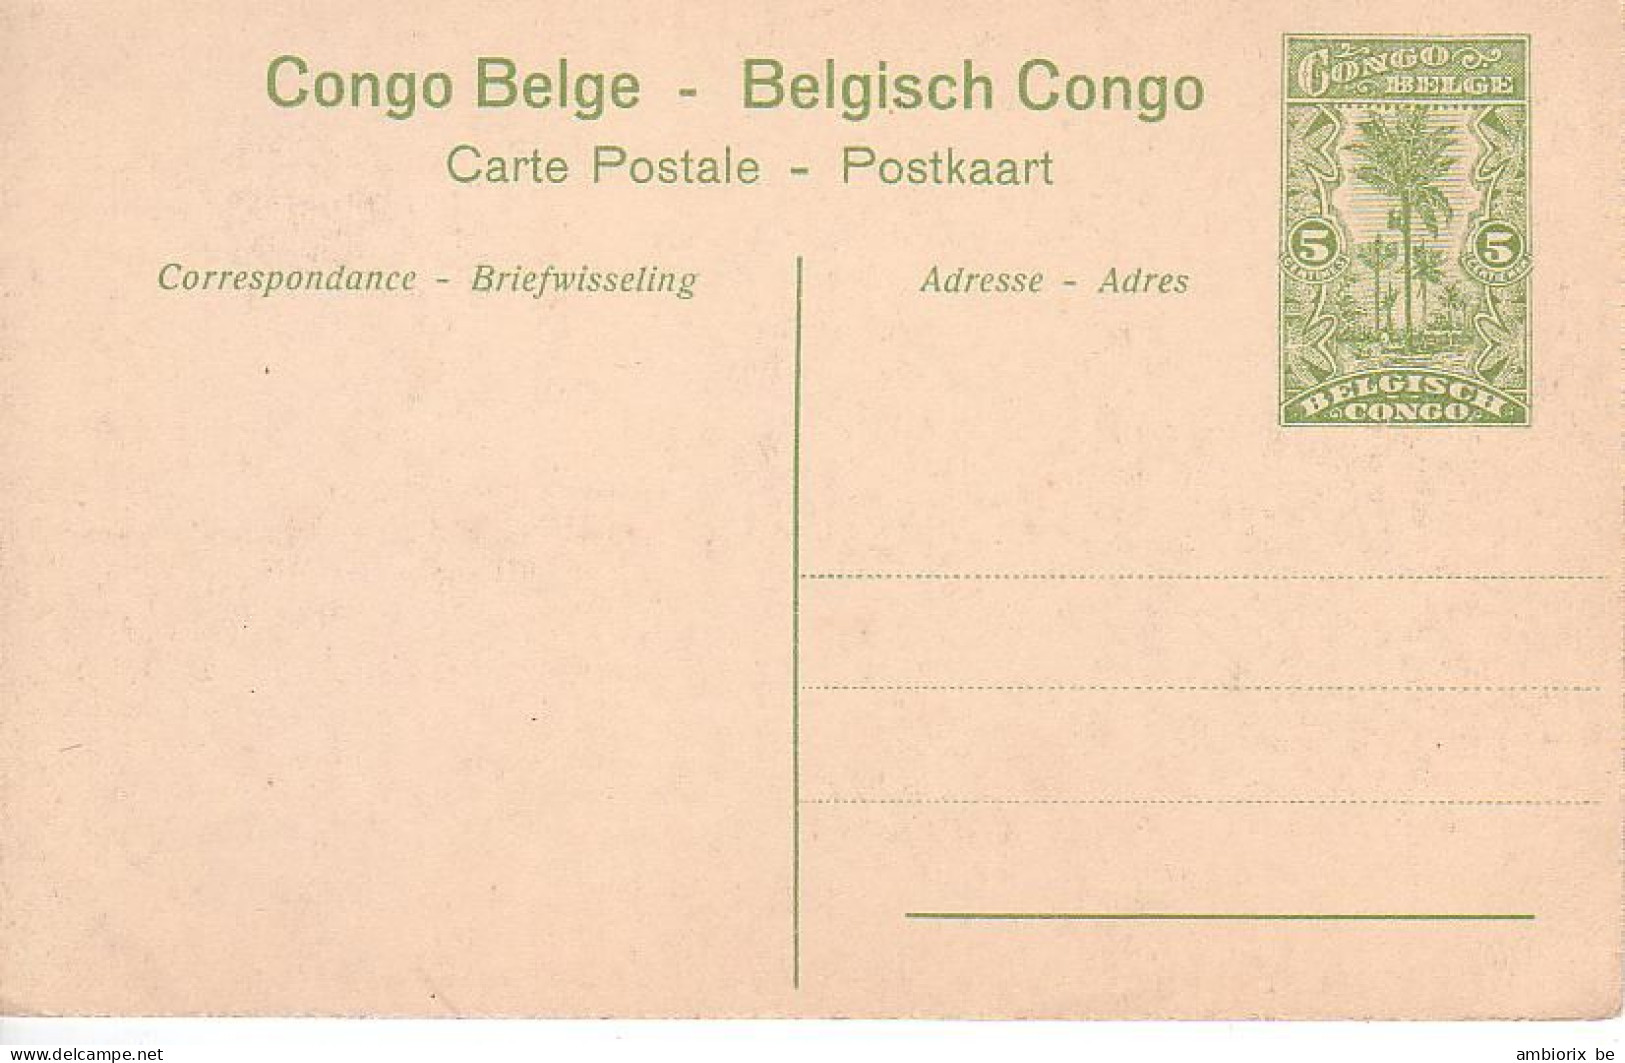 Etier Postal Congo Neuf N° 42 - 70 - Kisantu - Récolte Du Riz - Ganzsachen